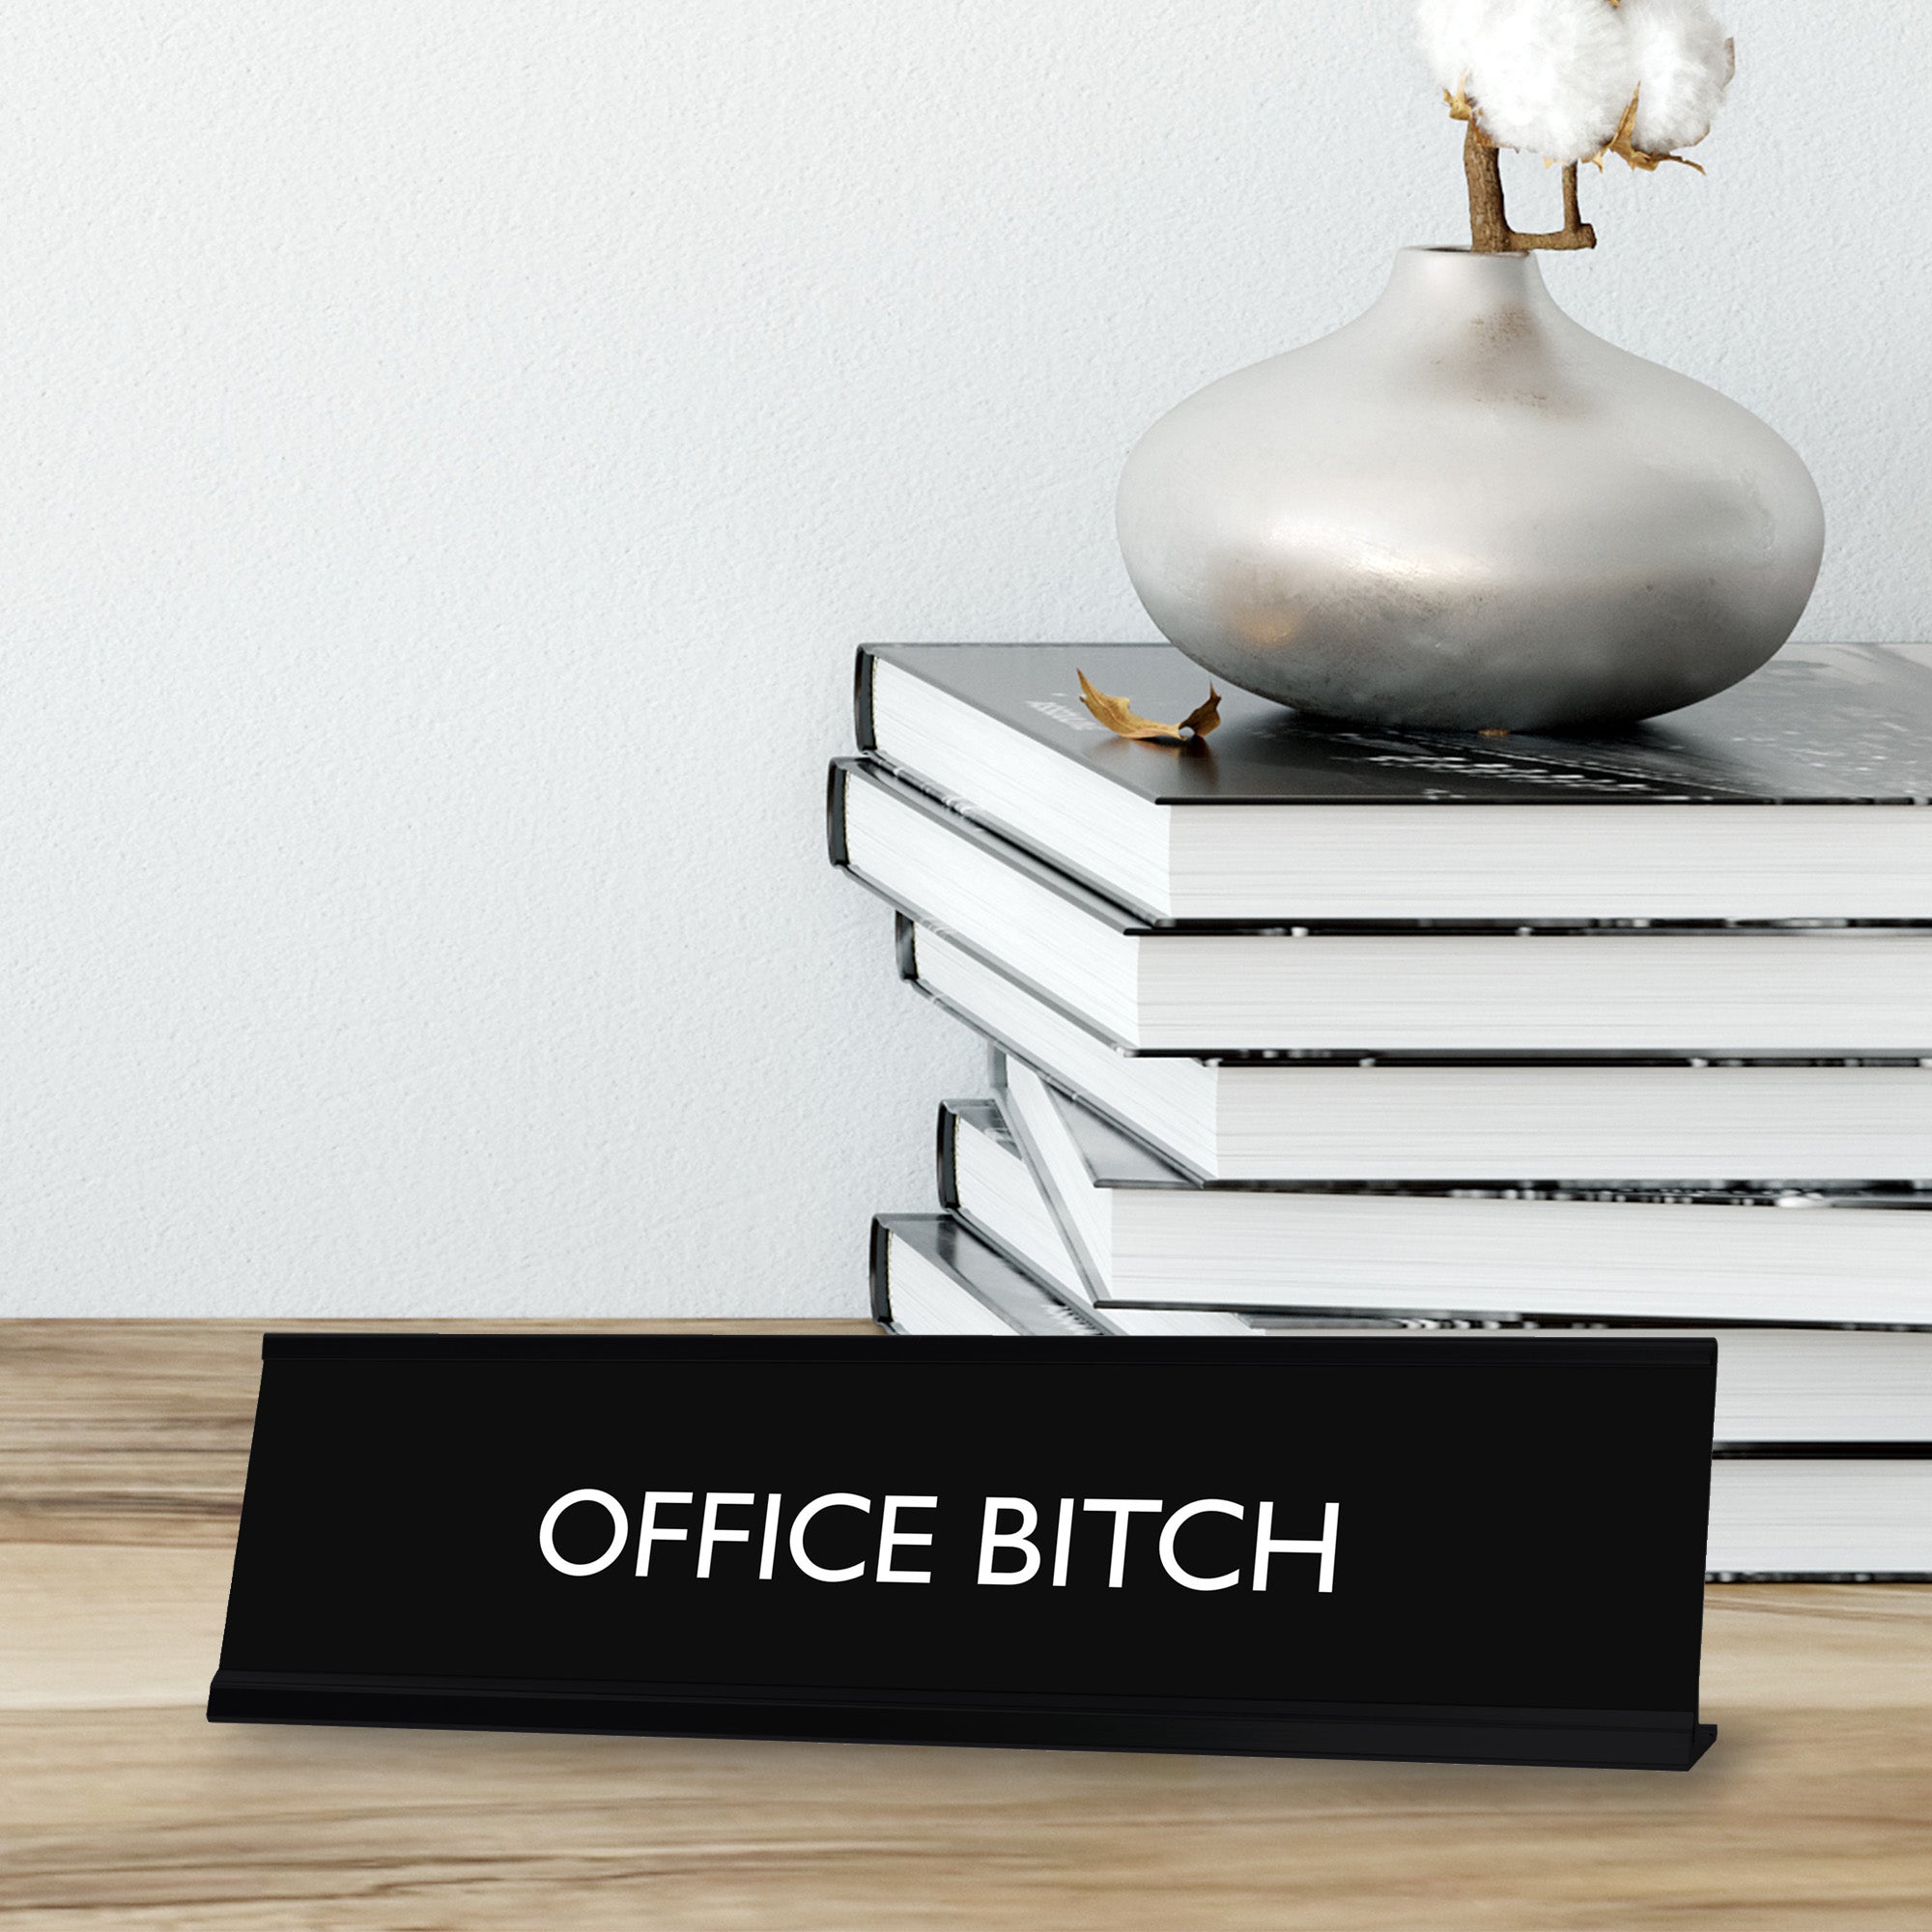 OFFICE BITCH Novelty Desk Sign